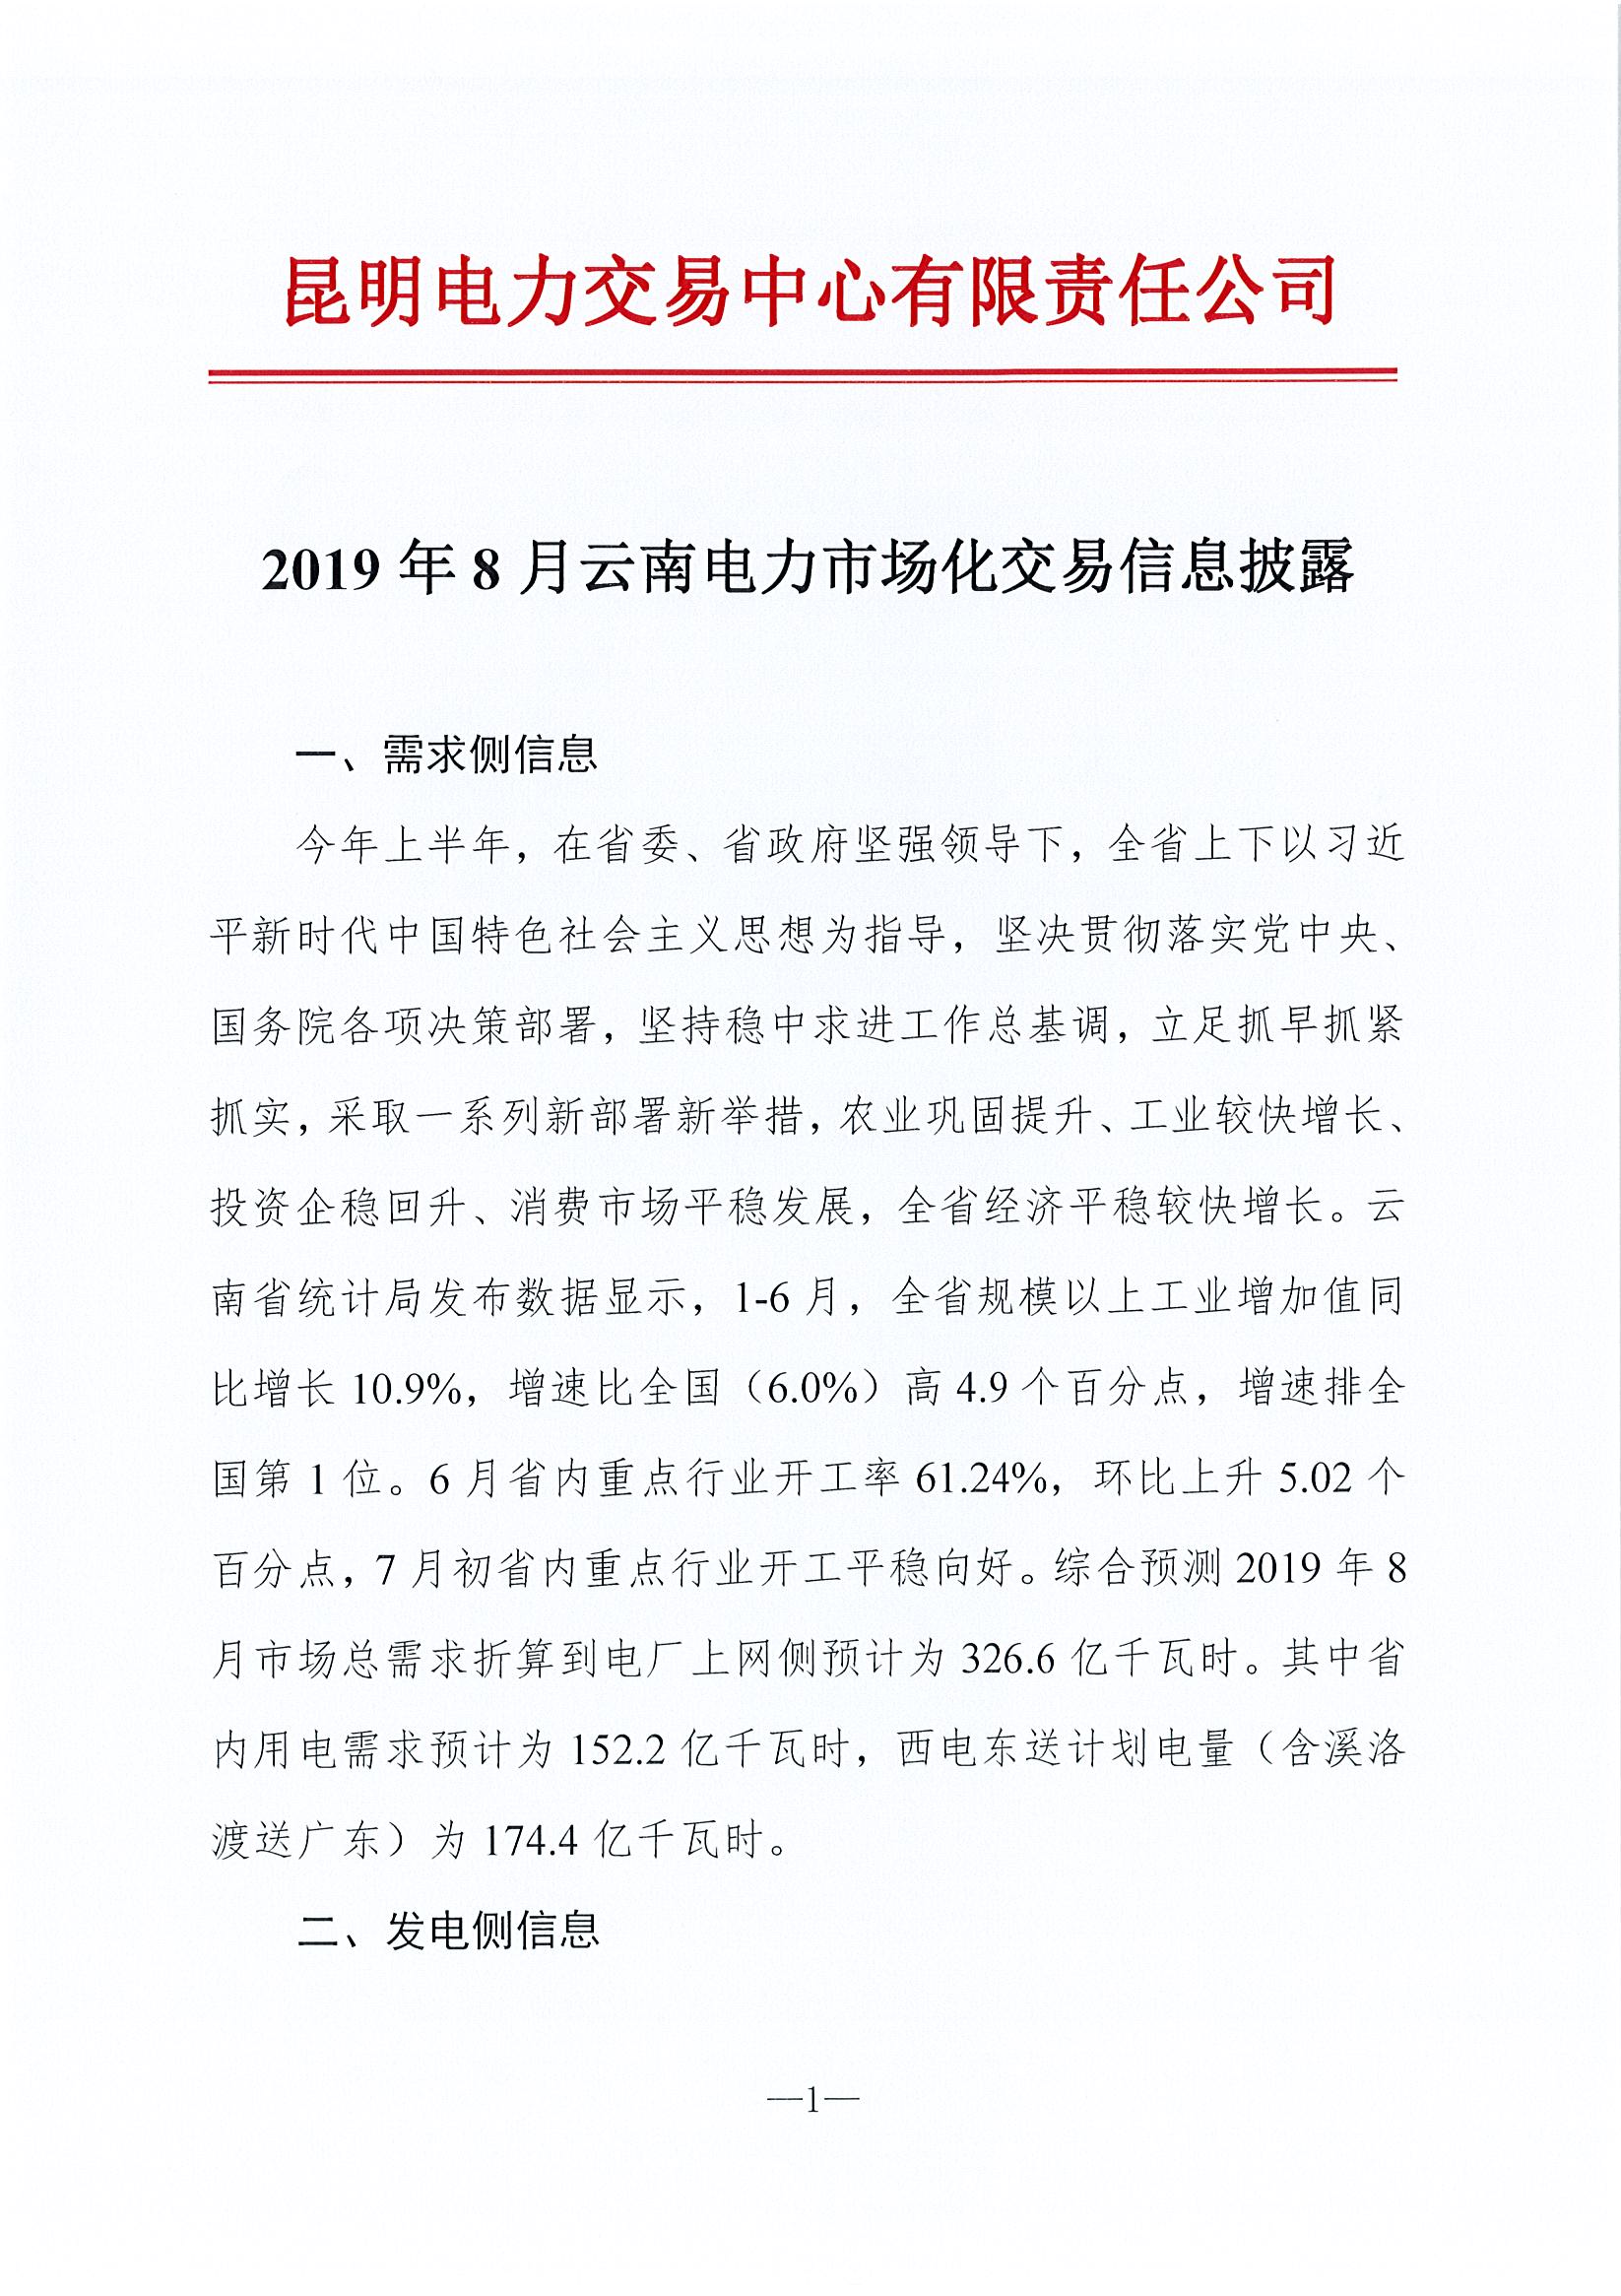 2019年8月云南电力市场化交易信息披露